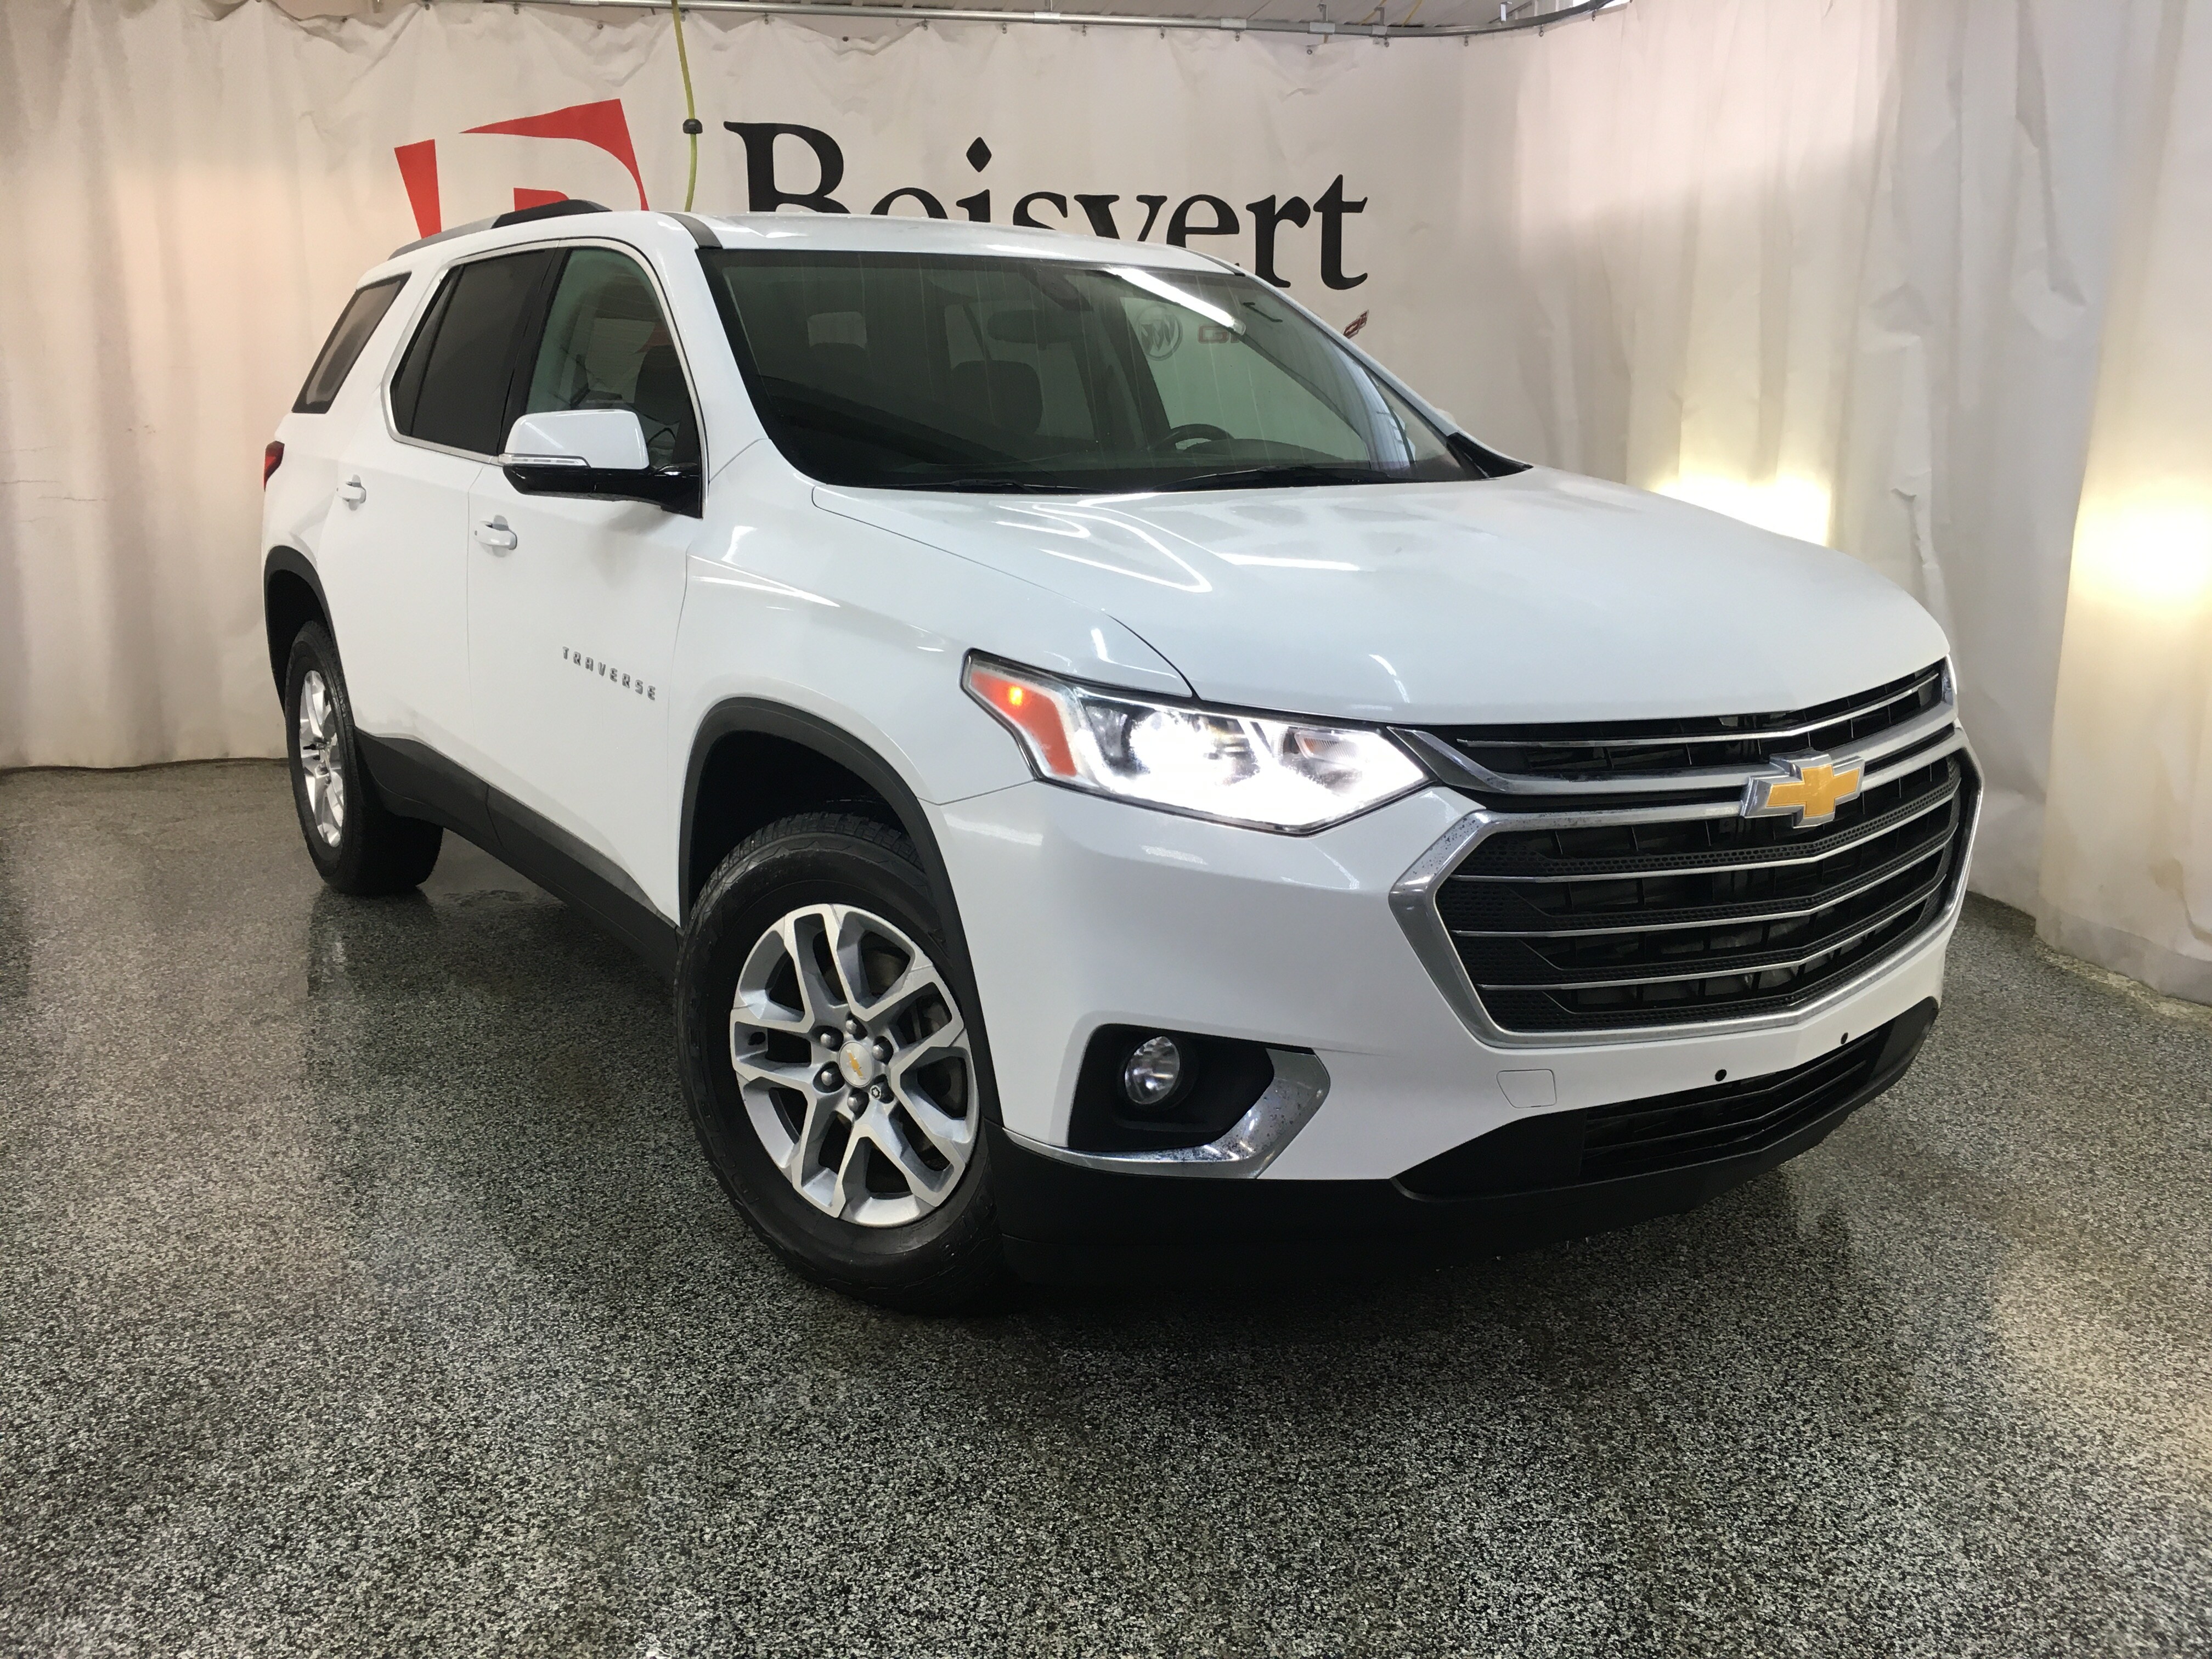 Chevrolet Traverse 2018 LT/ DEMARREUR/ SIEGES CHAUFFANTS/ 7 PLACES